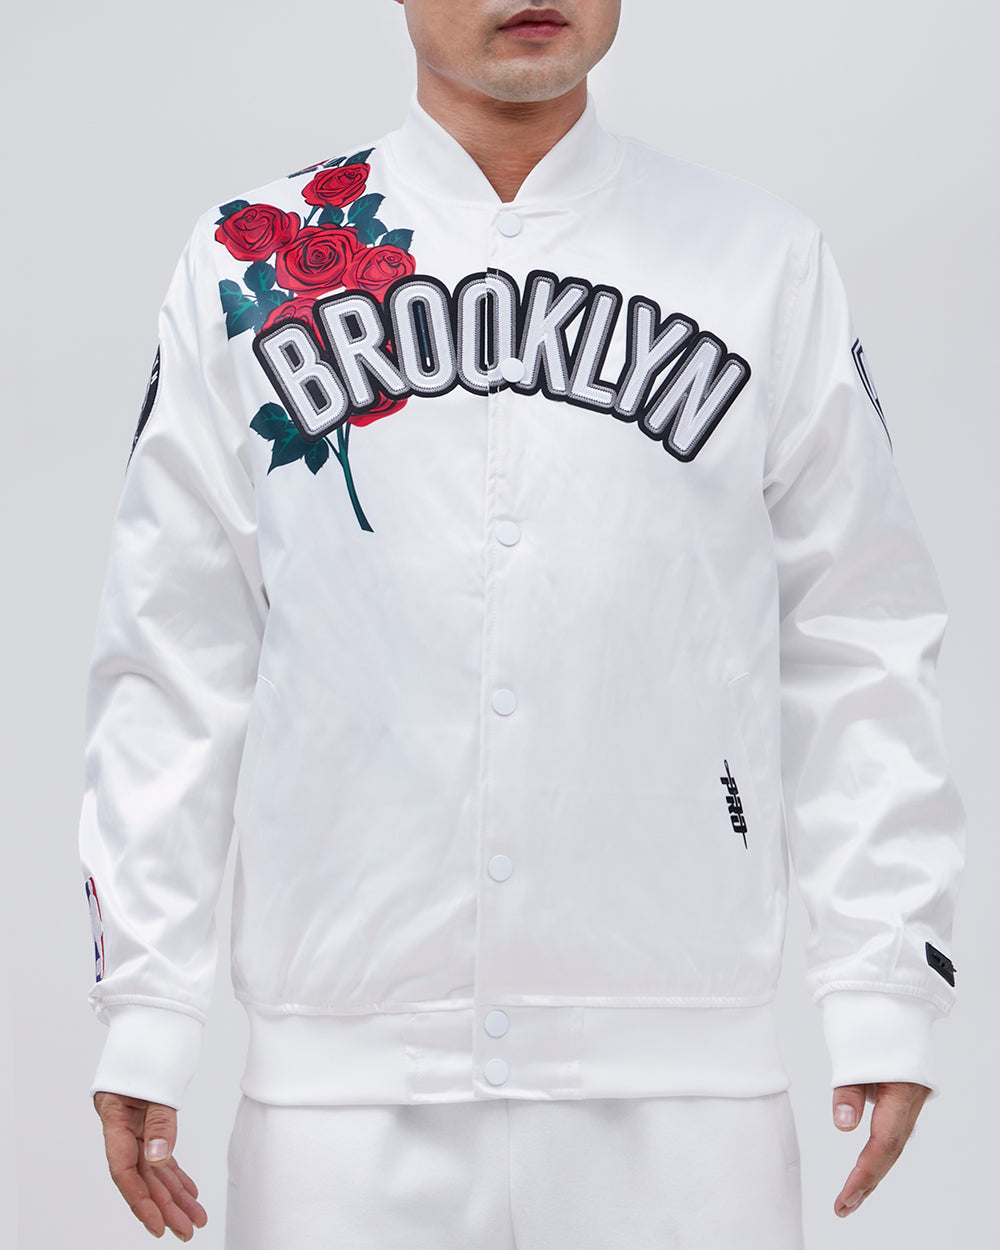 Mitchell & Ness NY Knicks Authentic Warm Up Jacket